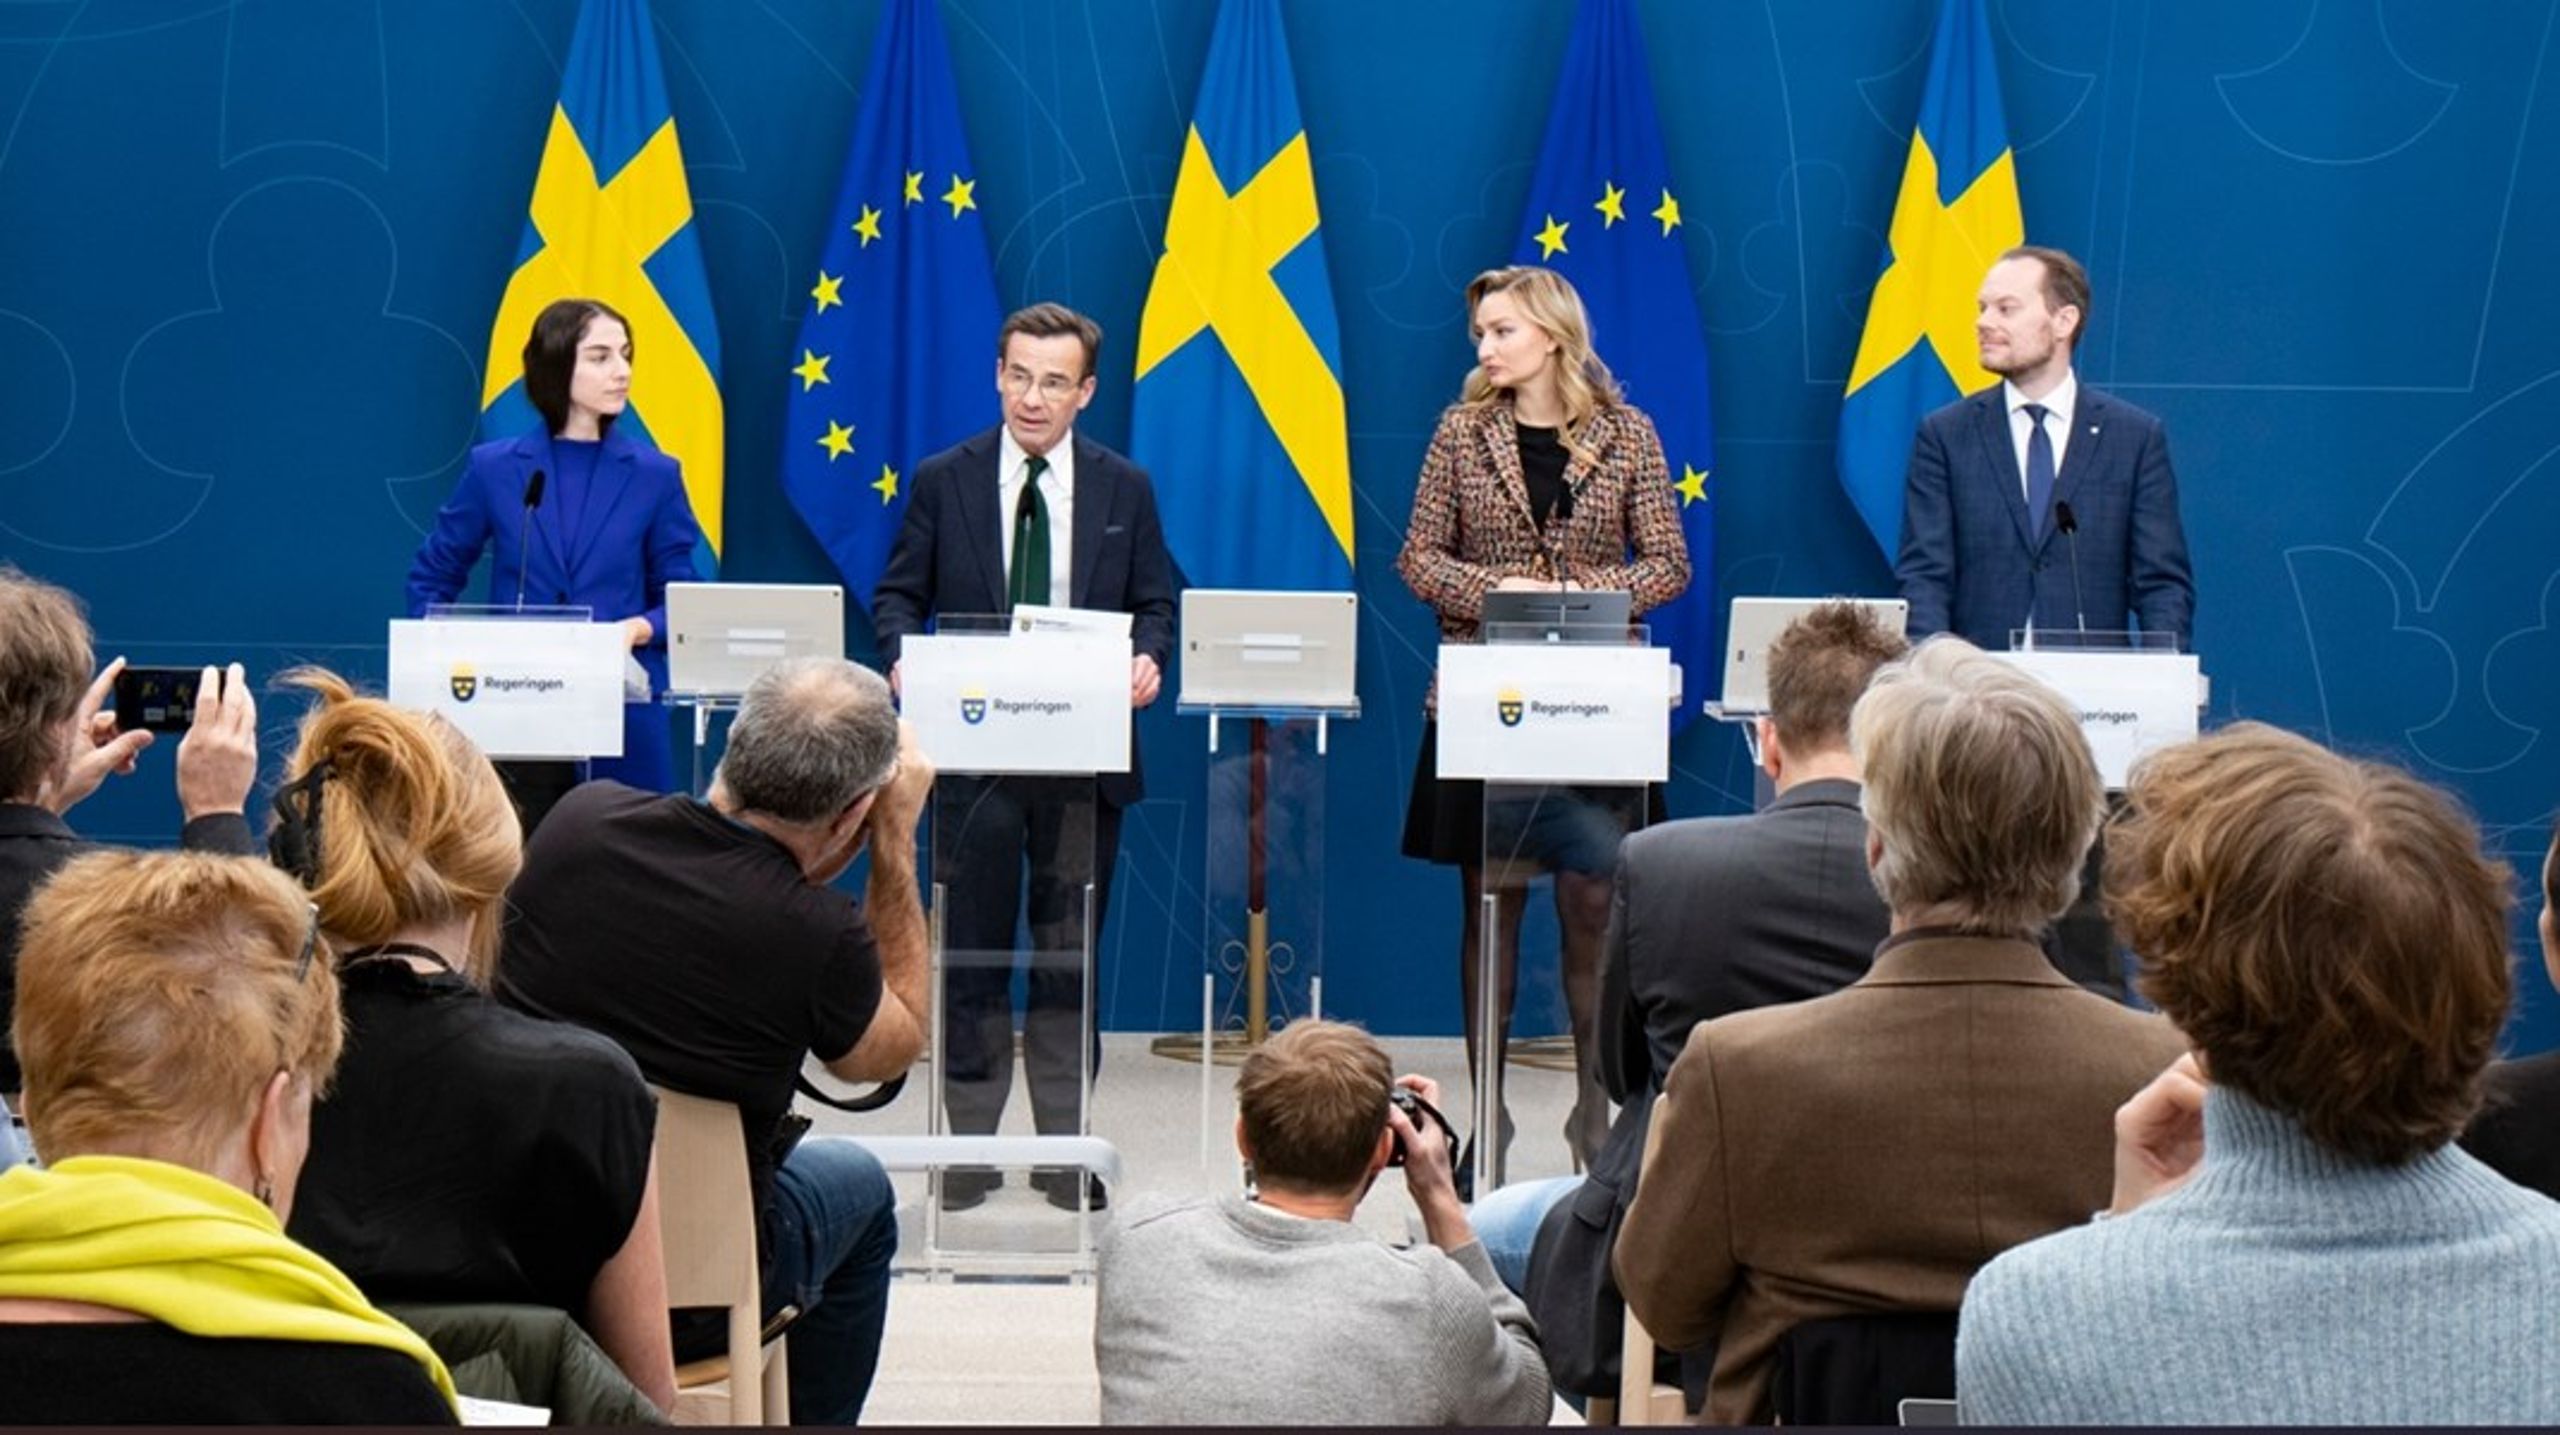 ”Vårt fokus nu efter EU:s klimatpaket Fitfor55 är att skapa
förutsättningar för att Sverige ska klara sina klimatmål på ett så effektivt sätt
som möjligt,” var statsministerns budskap i vintras. Men flera stora luckor återfinns i regeringens redovisade energi- och klimatpolitik för att leva upp till de gemensamt antagna EU-regelverken.<br>